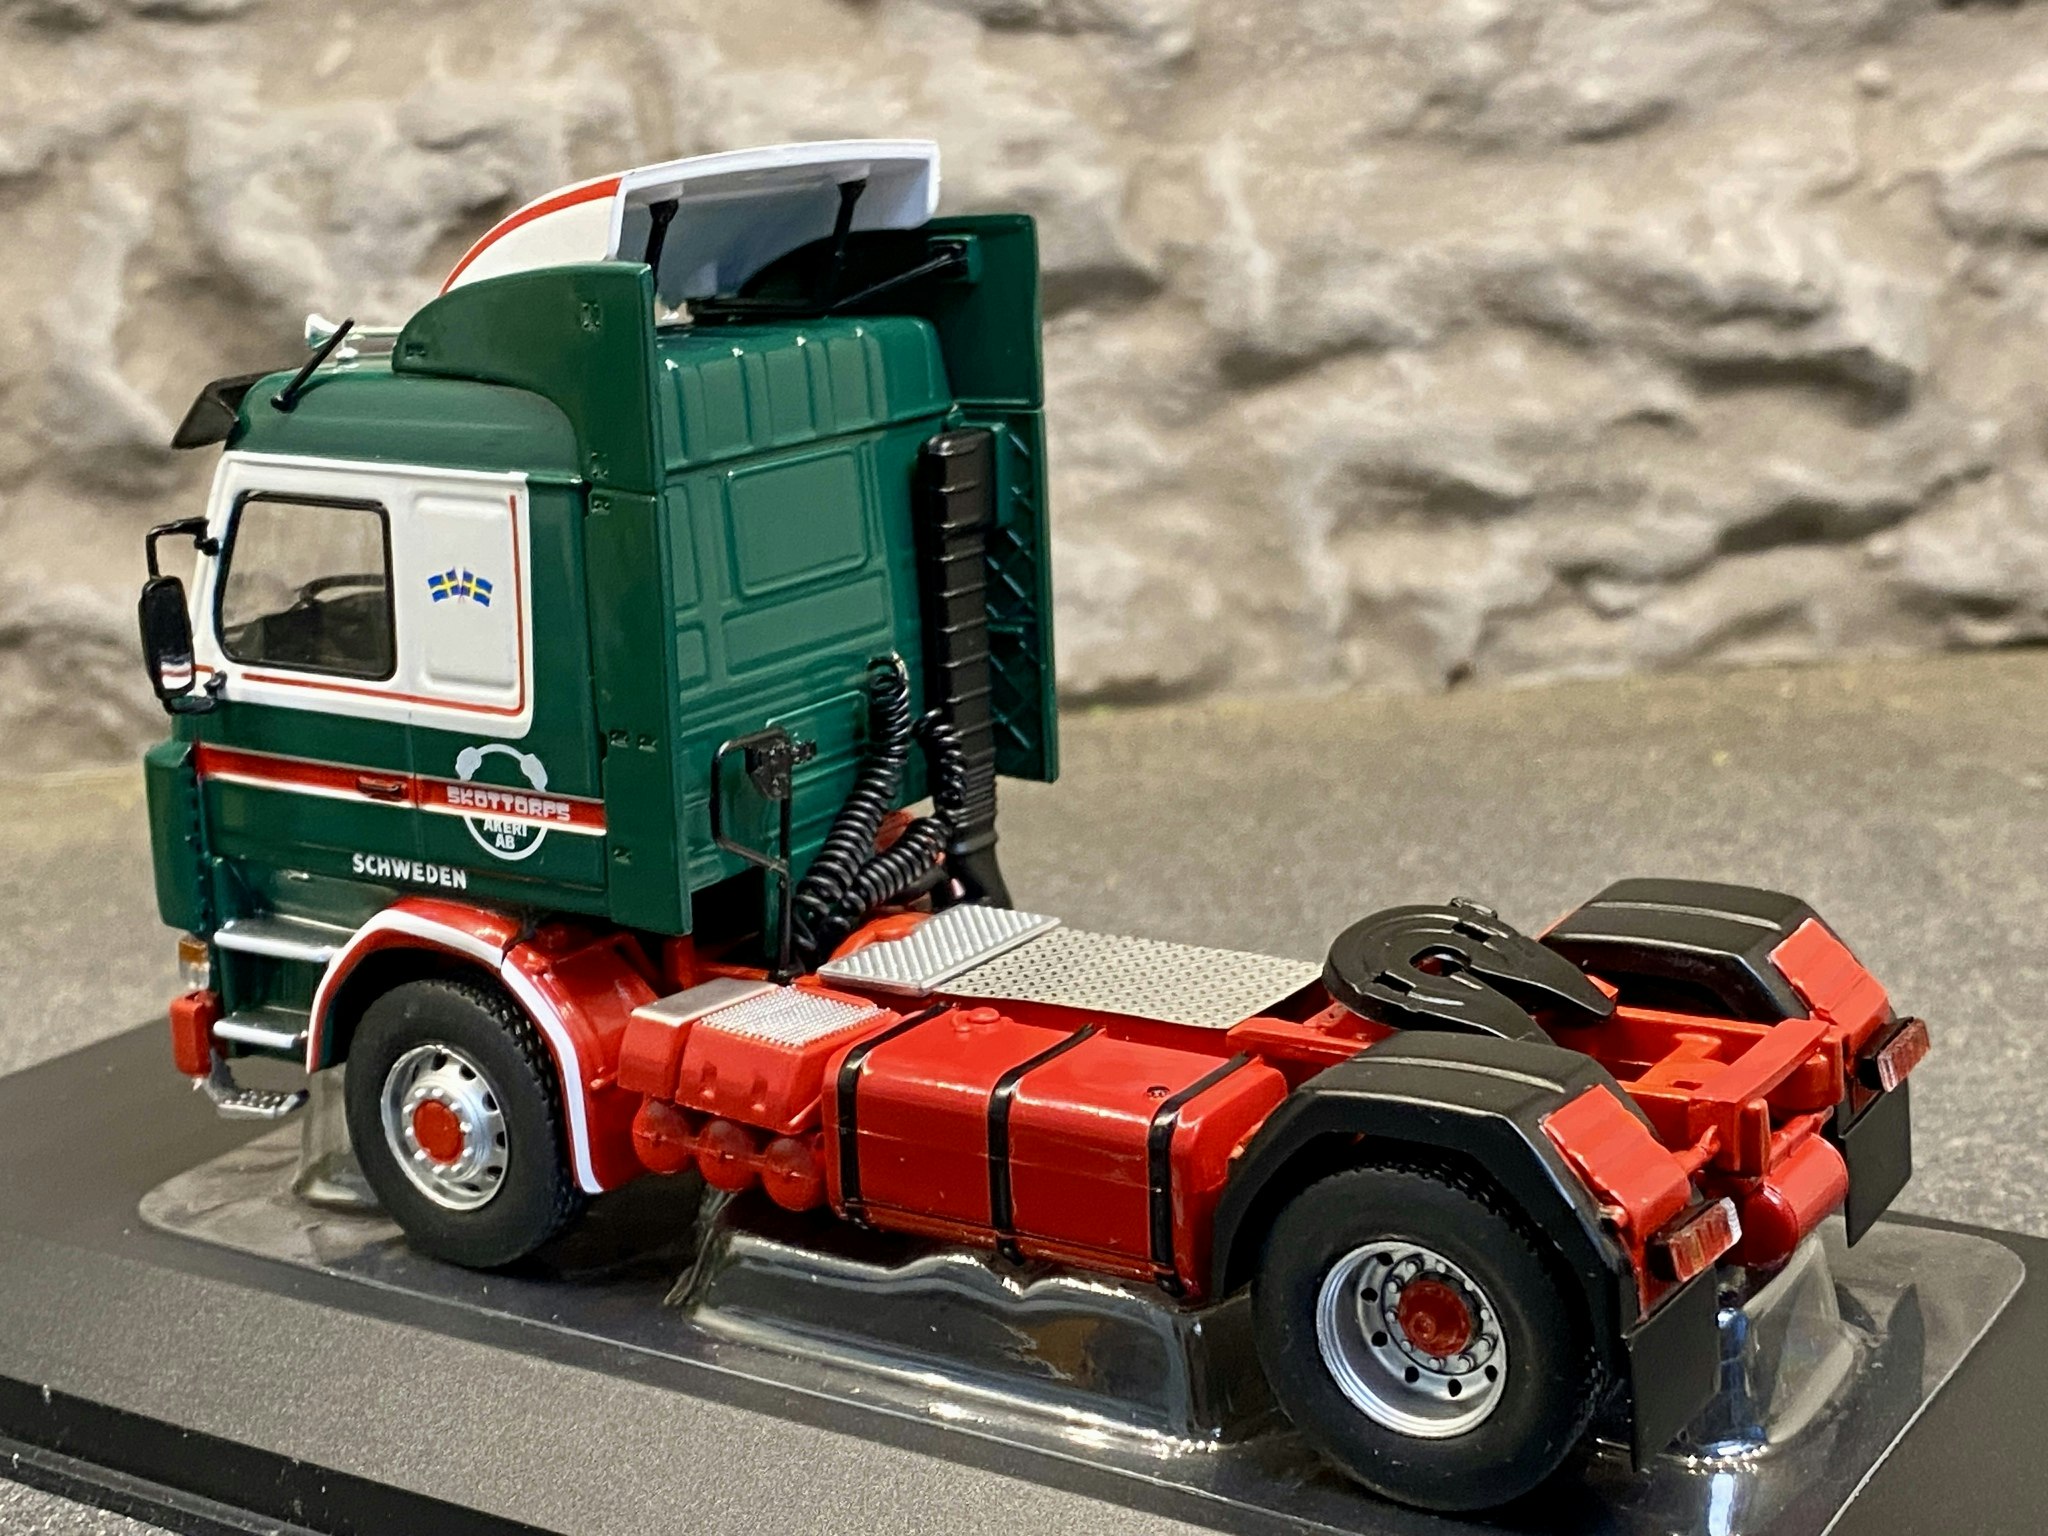 Skala 1/43 Scania 142 M, Green/white/red fr IXO Models